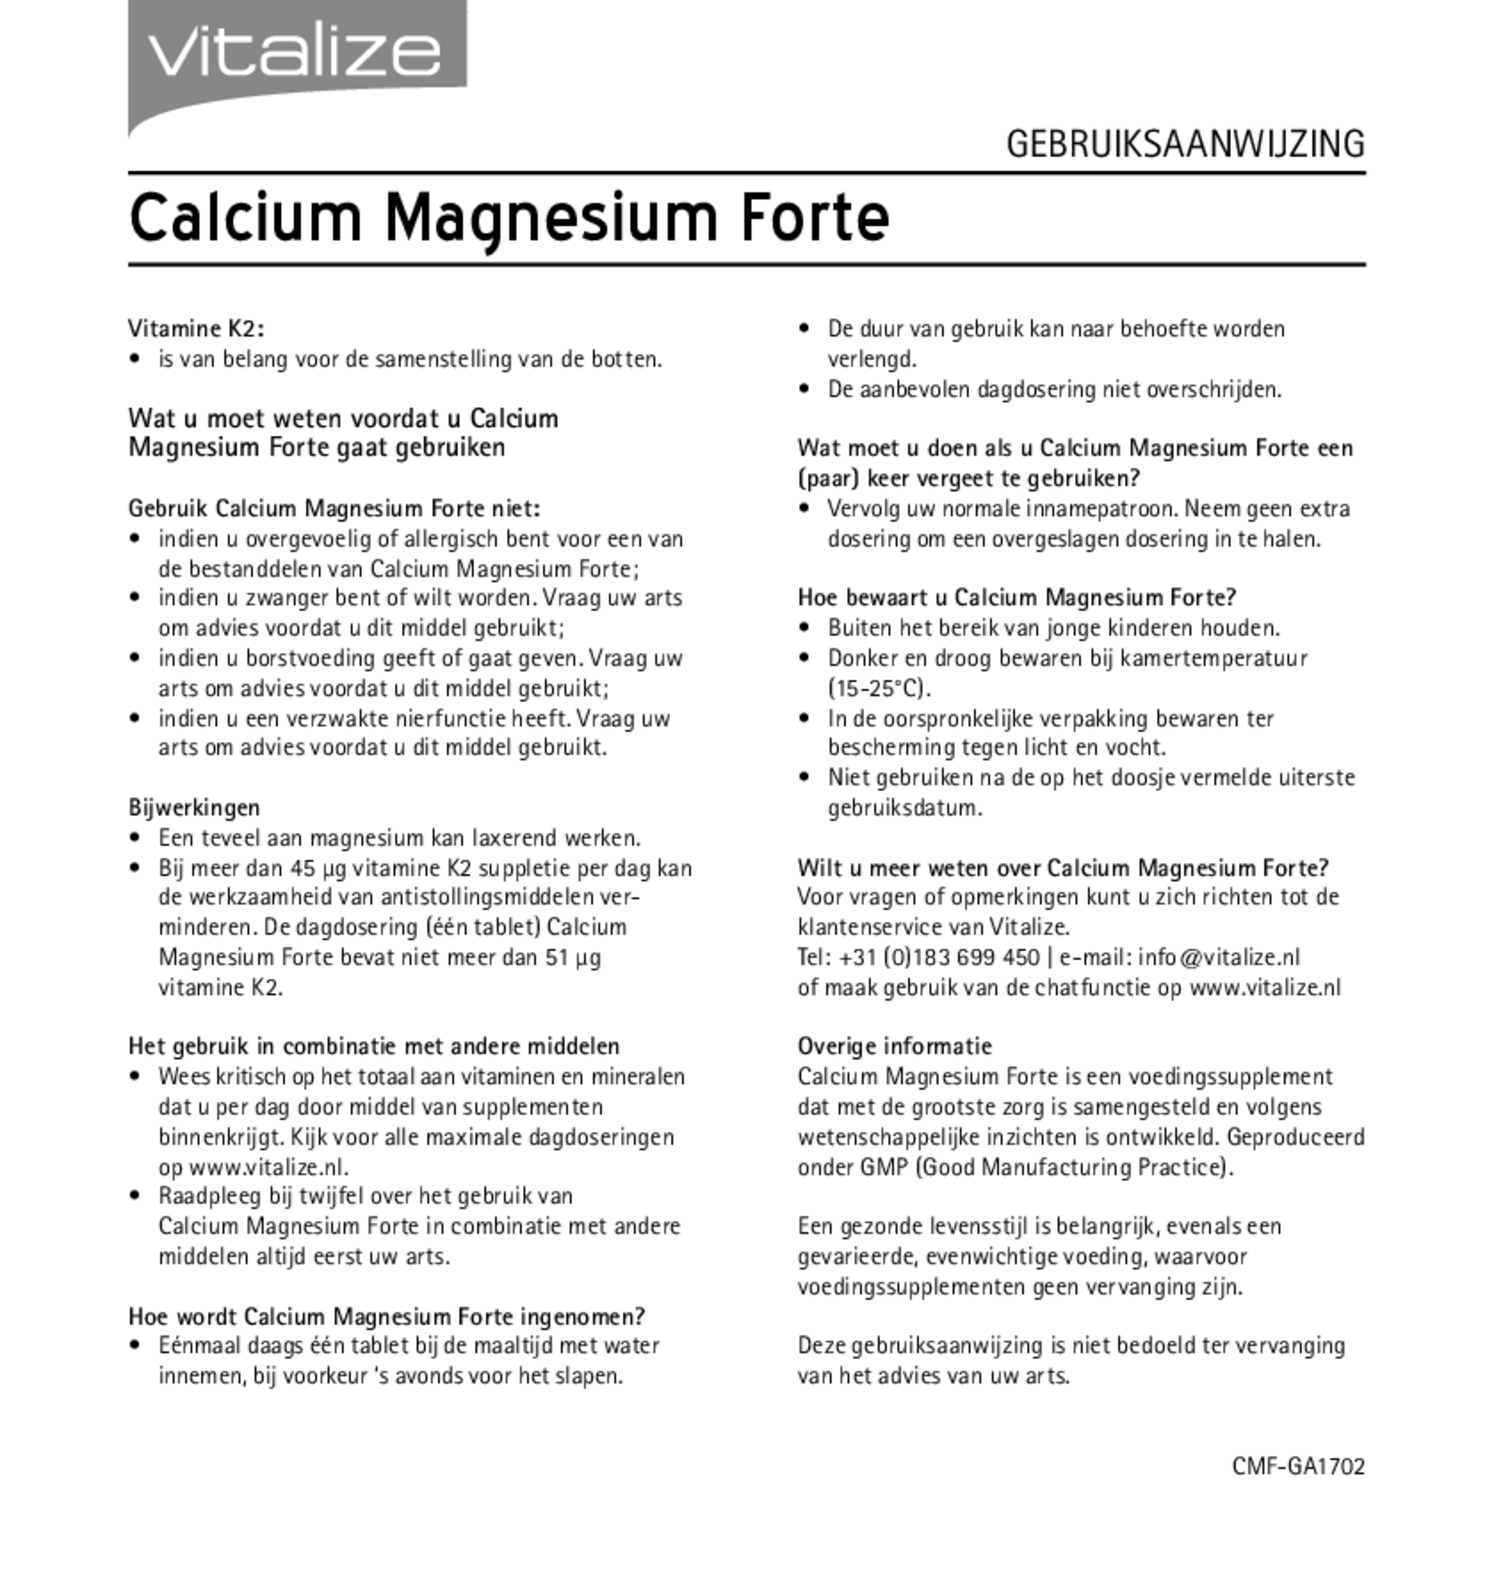 Calcium Magnesium Forte Tabletten afbeelding van document #2, gebruiksaanwijzing